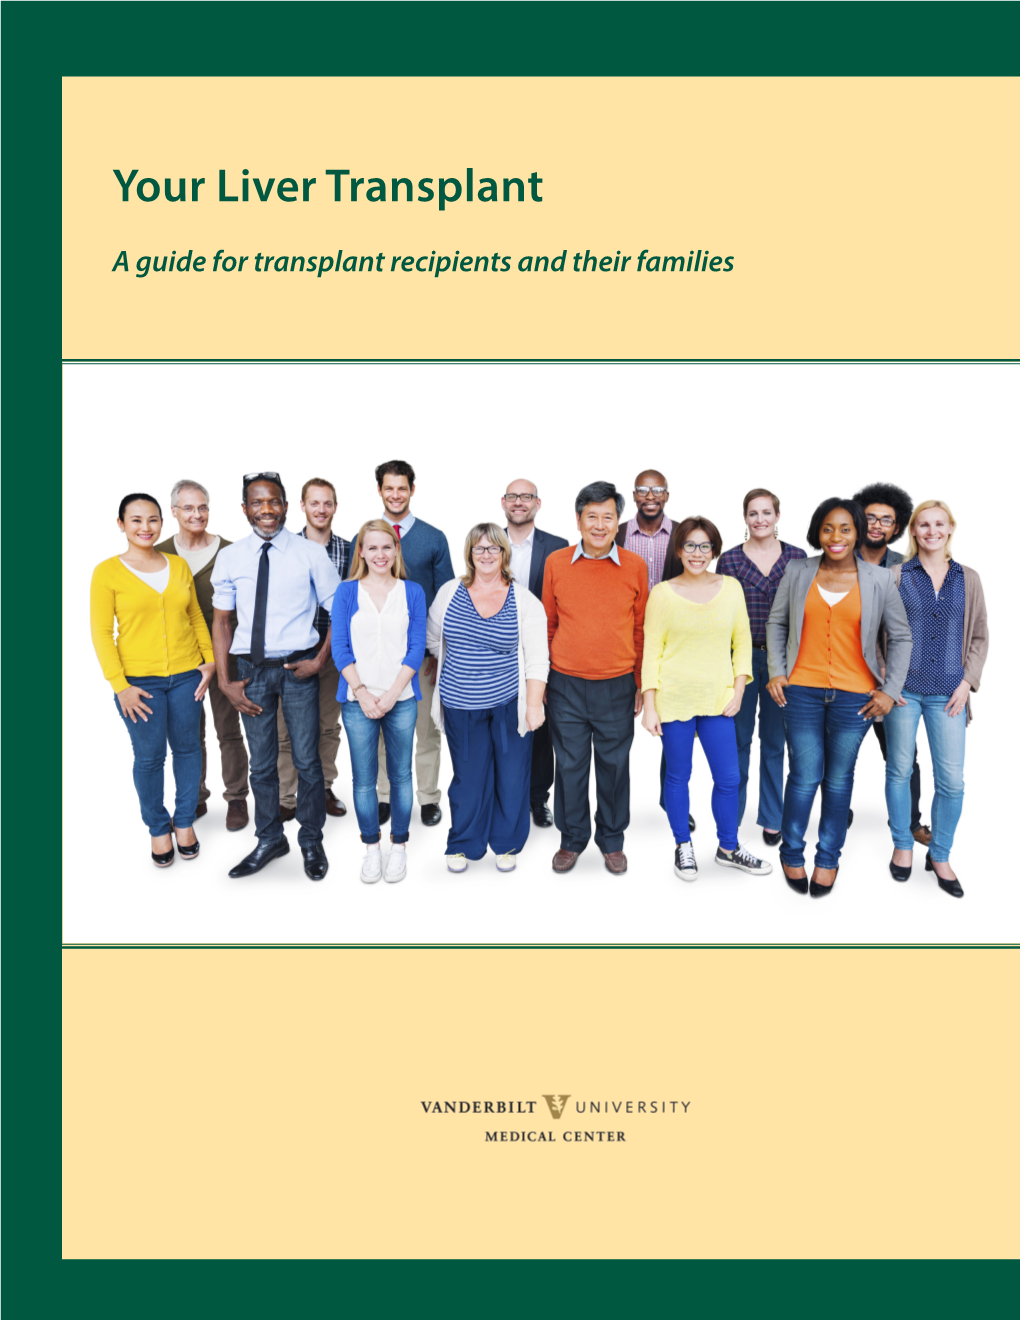 Your Liver Transplant